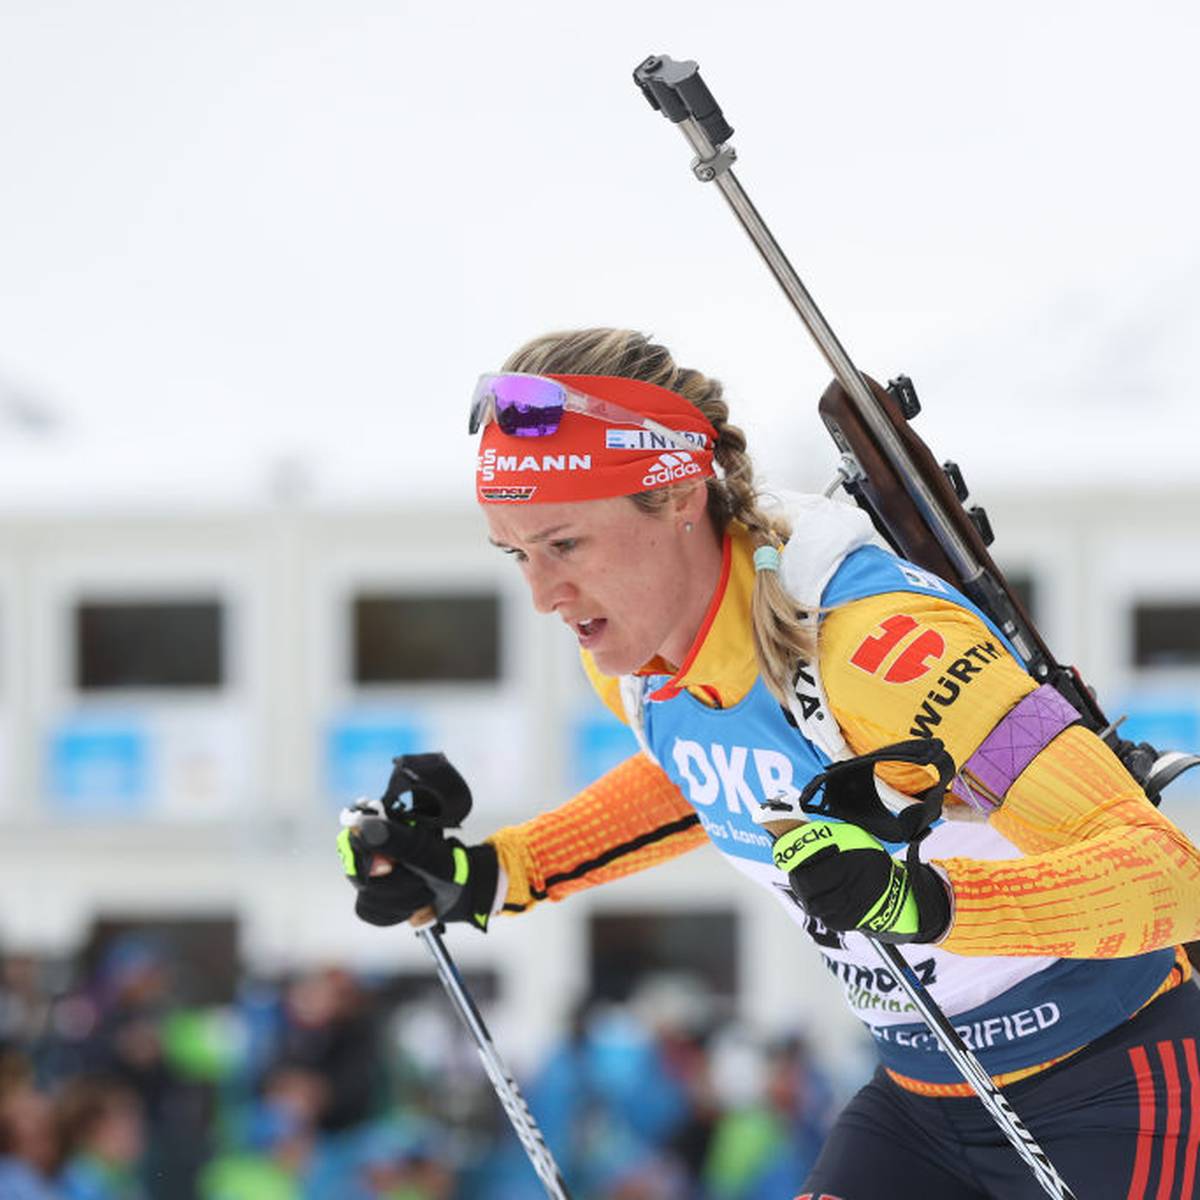 Biathlon 2020 Heute Sprint der Damen LIVE im TV, Stream, Ticker